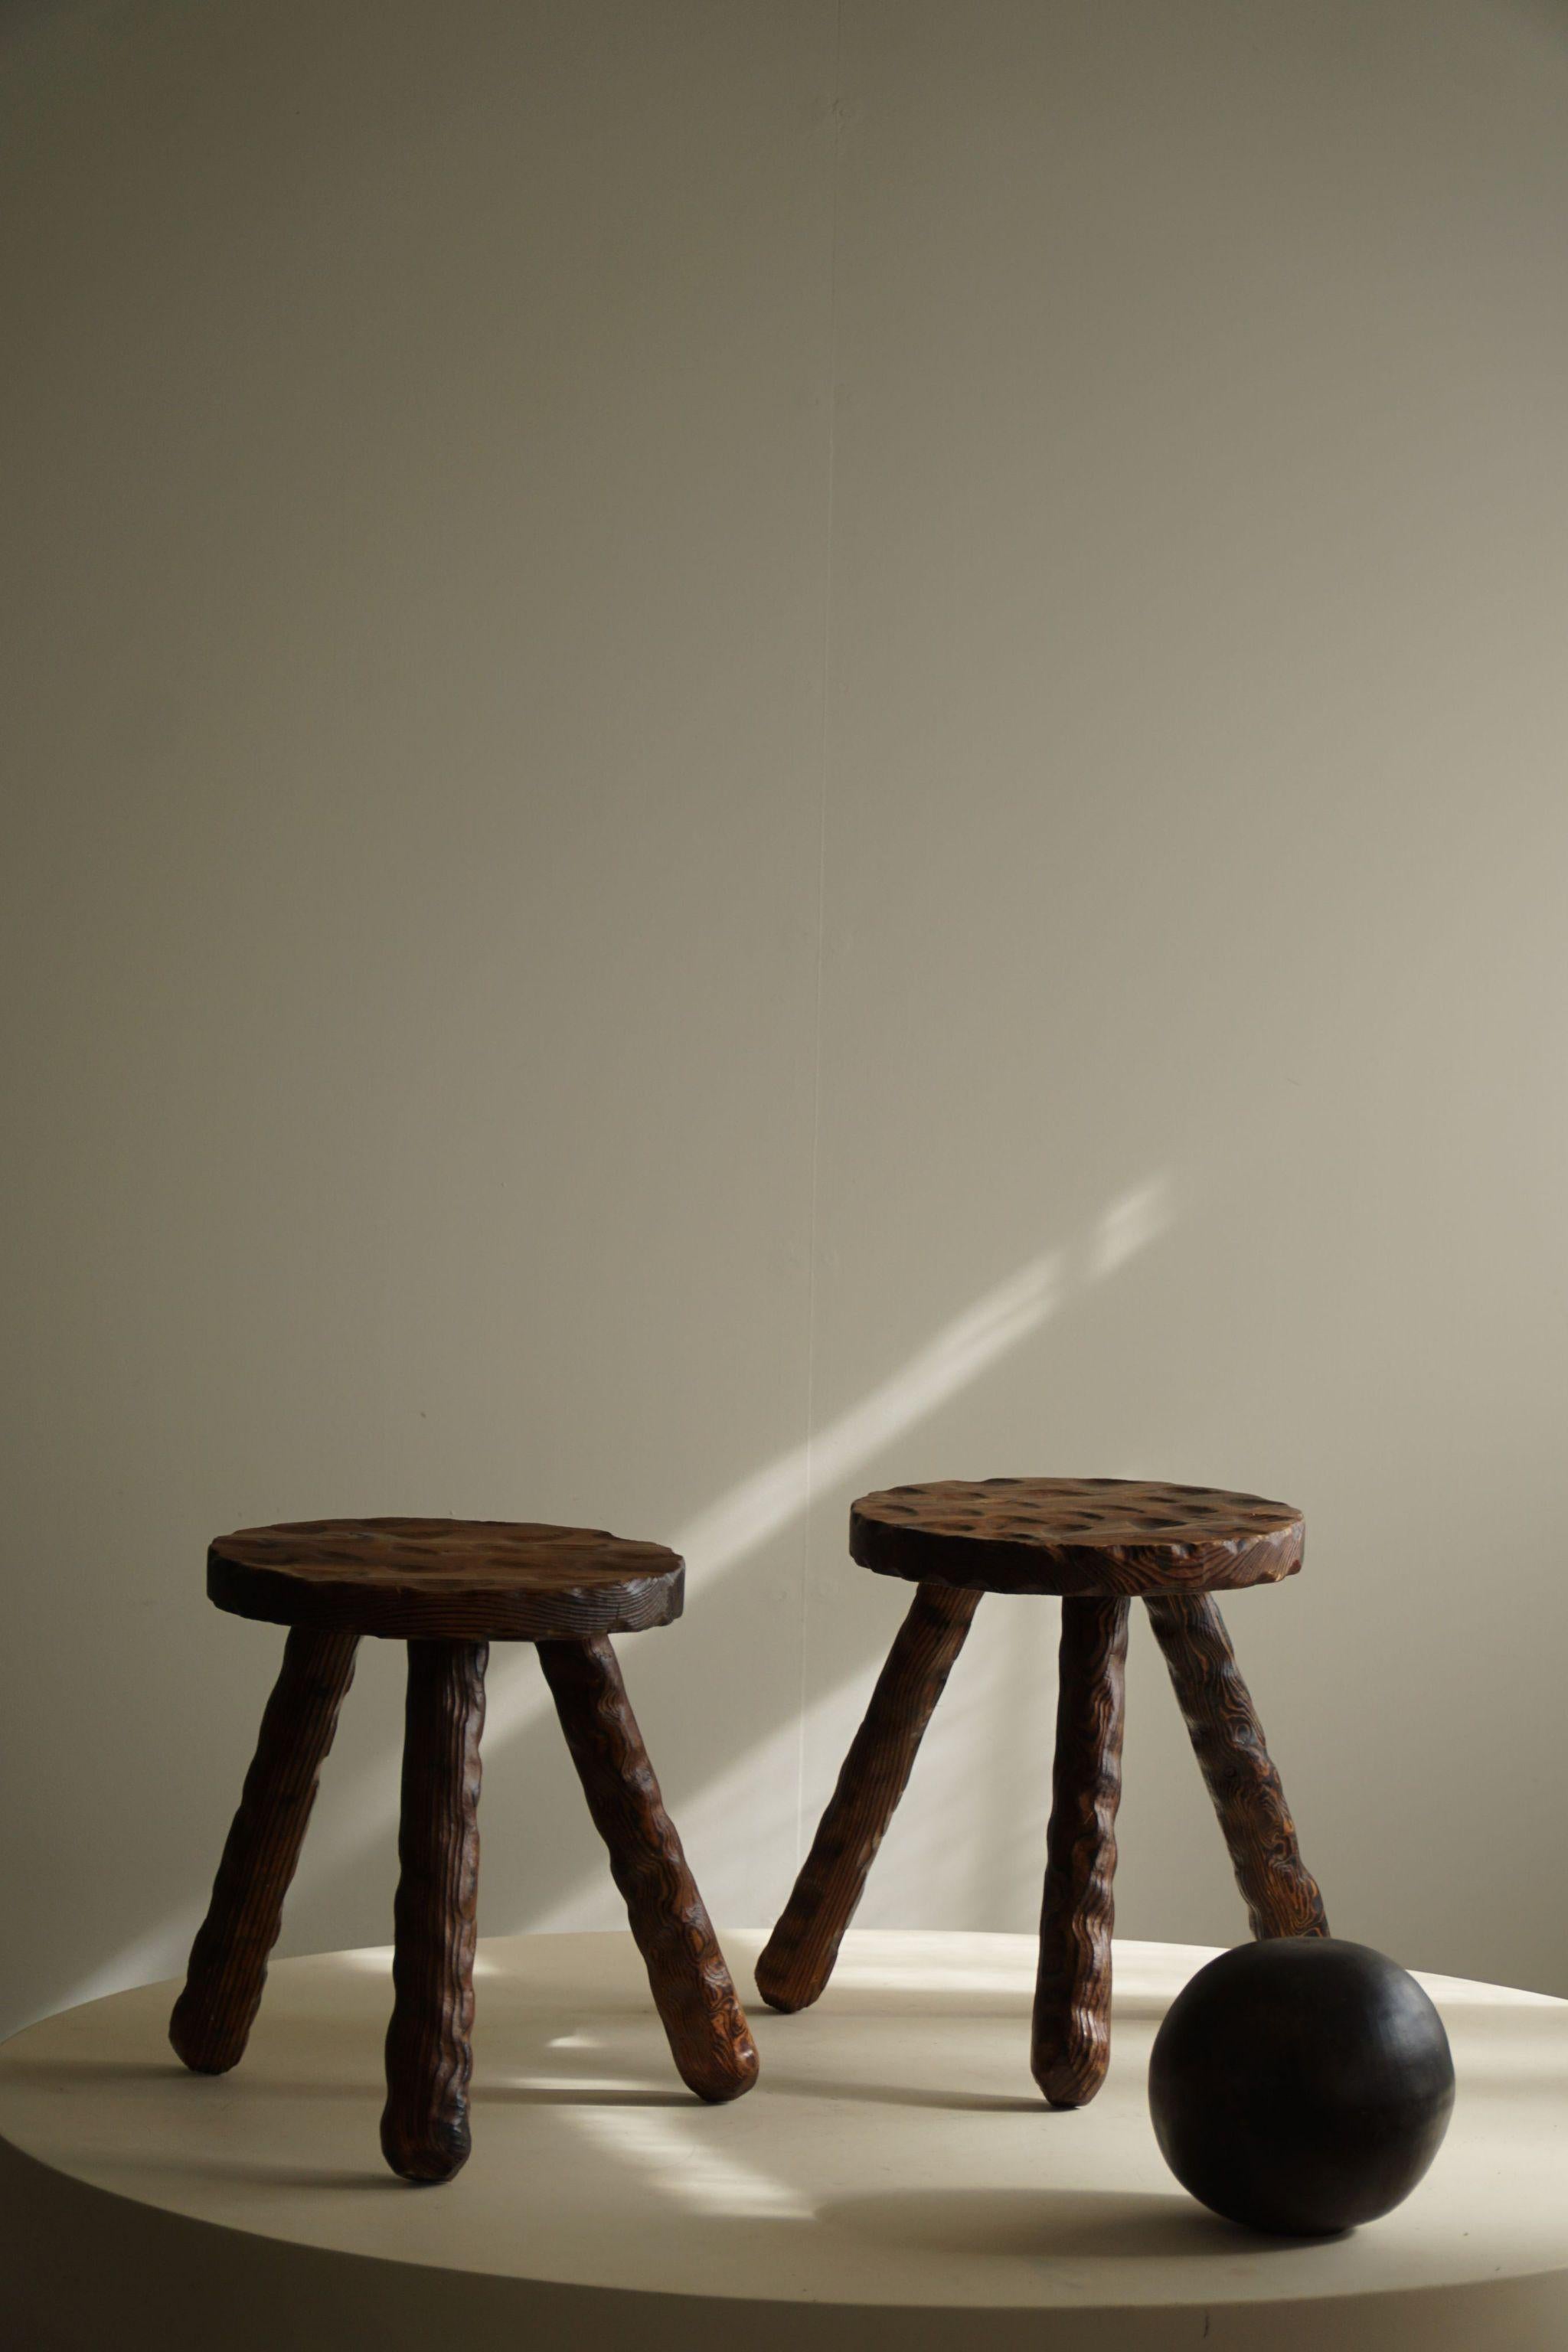 Ein Duo von Wabi Sabi-Hockern, die von einem erfahrenen schwedischen Tischler in den 1960er Jahren fachmännisch aus gebeiztem Kiefernholz geschnitzt wurden. Diese Hocker zeichnen sich durch eine minimalistische Ästhetik mit subtilen